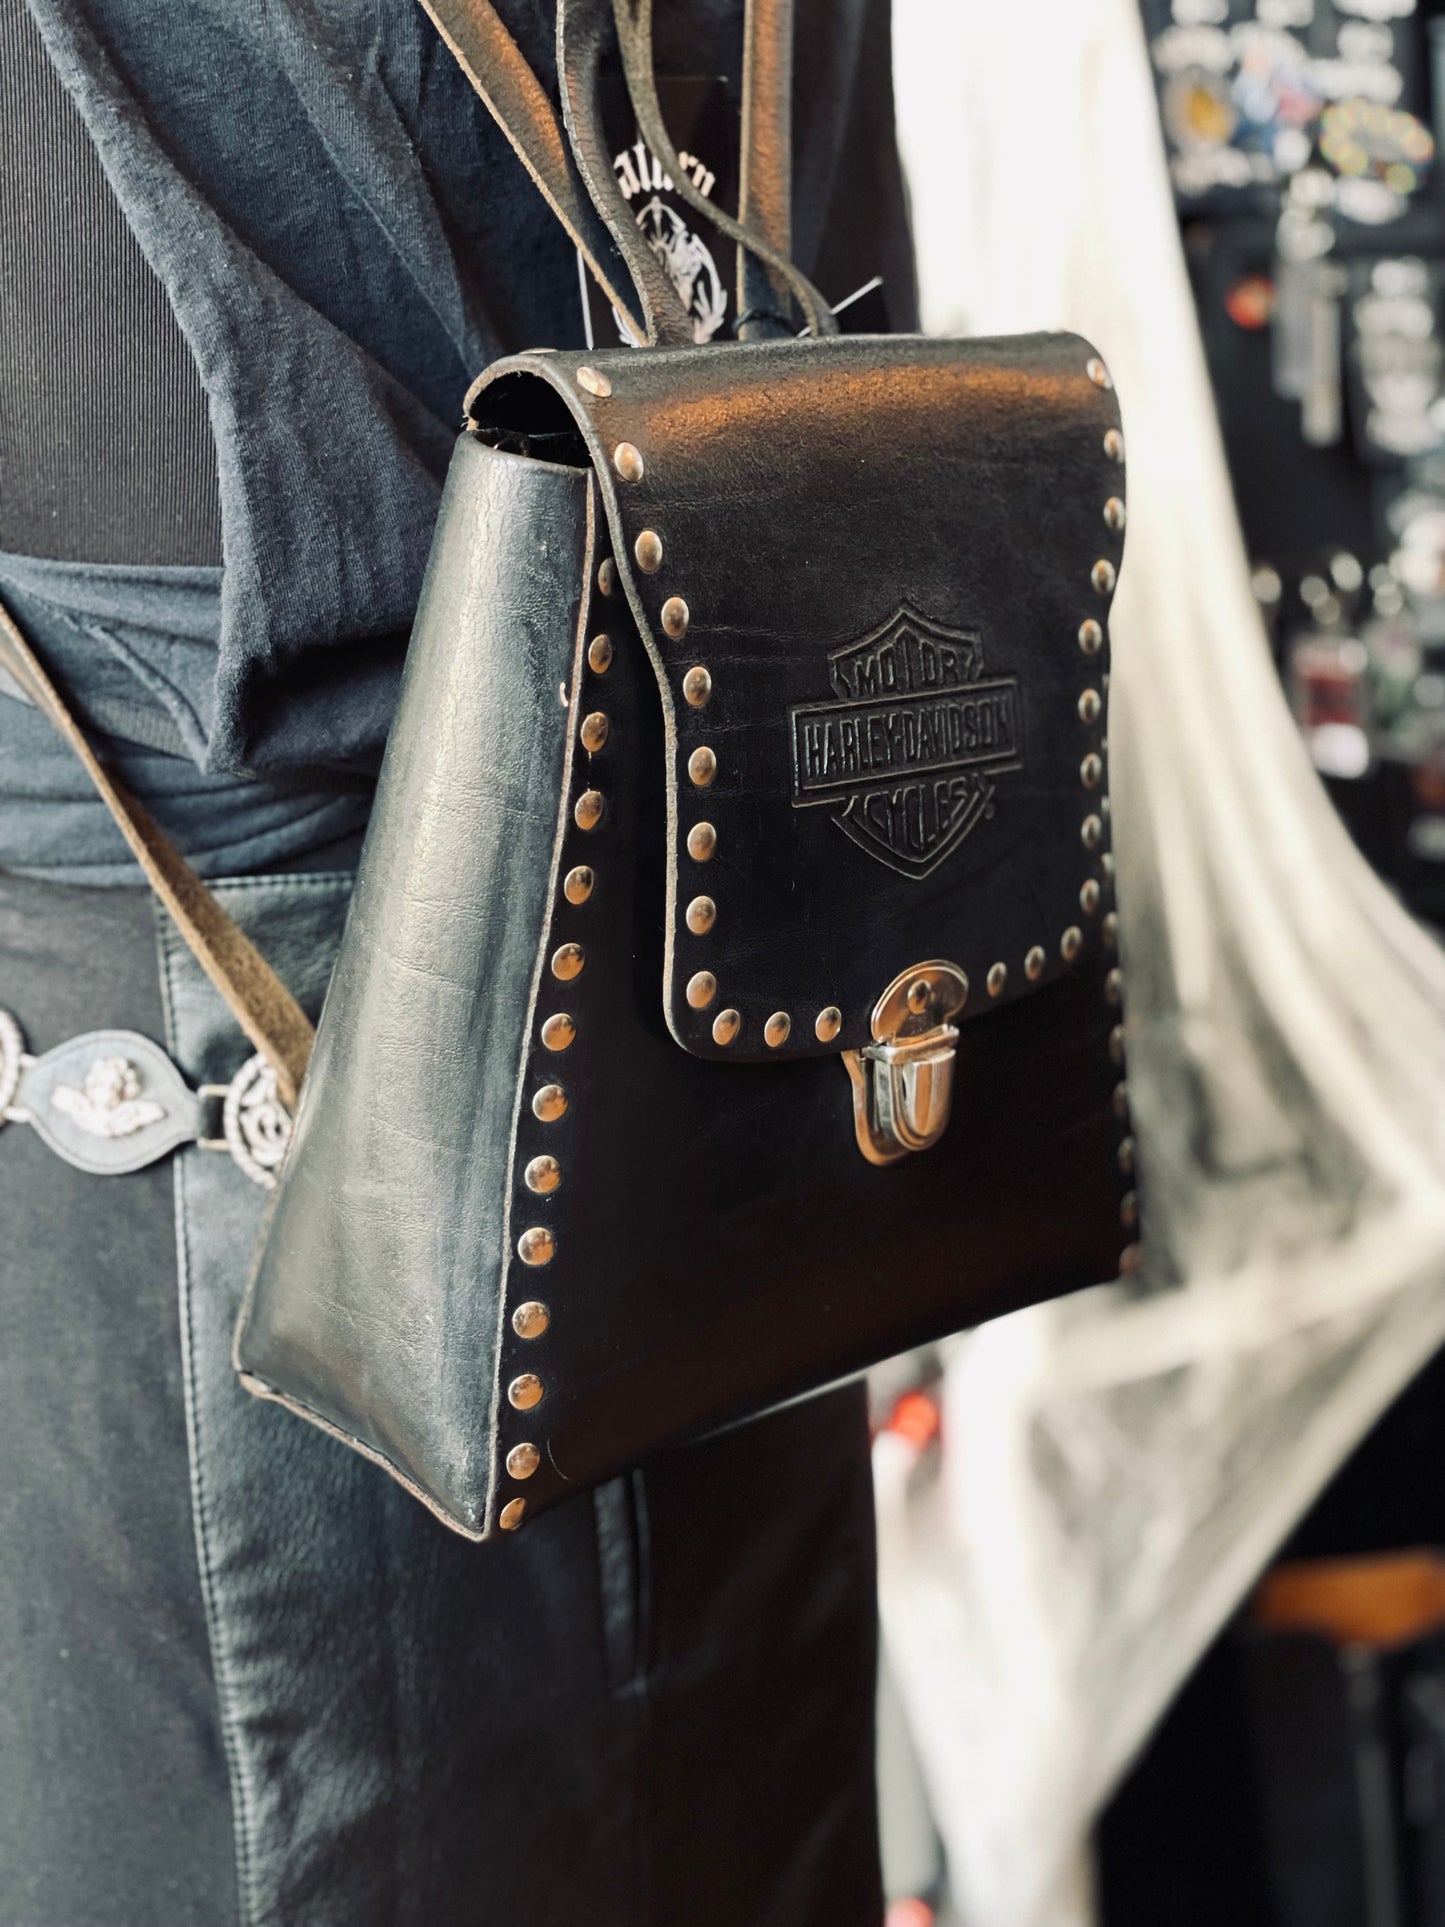 Vintage Harley-Davidson Studded Leather Backpack